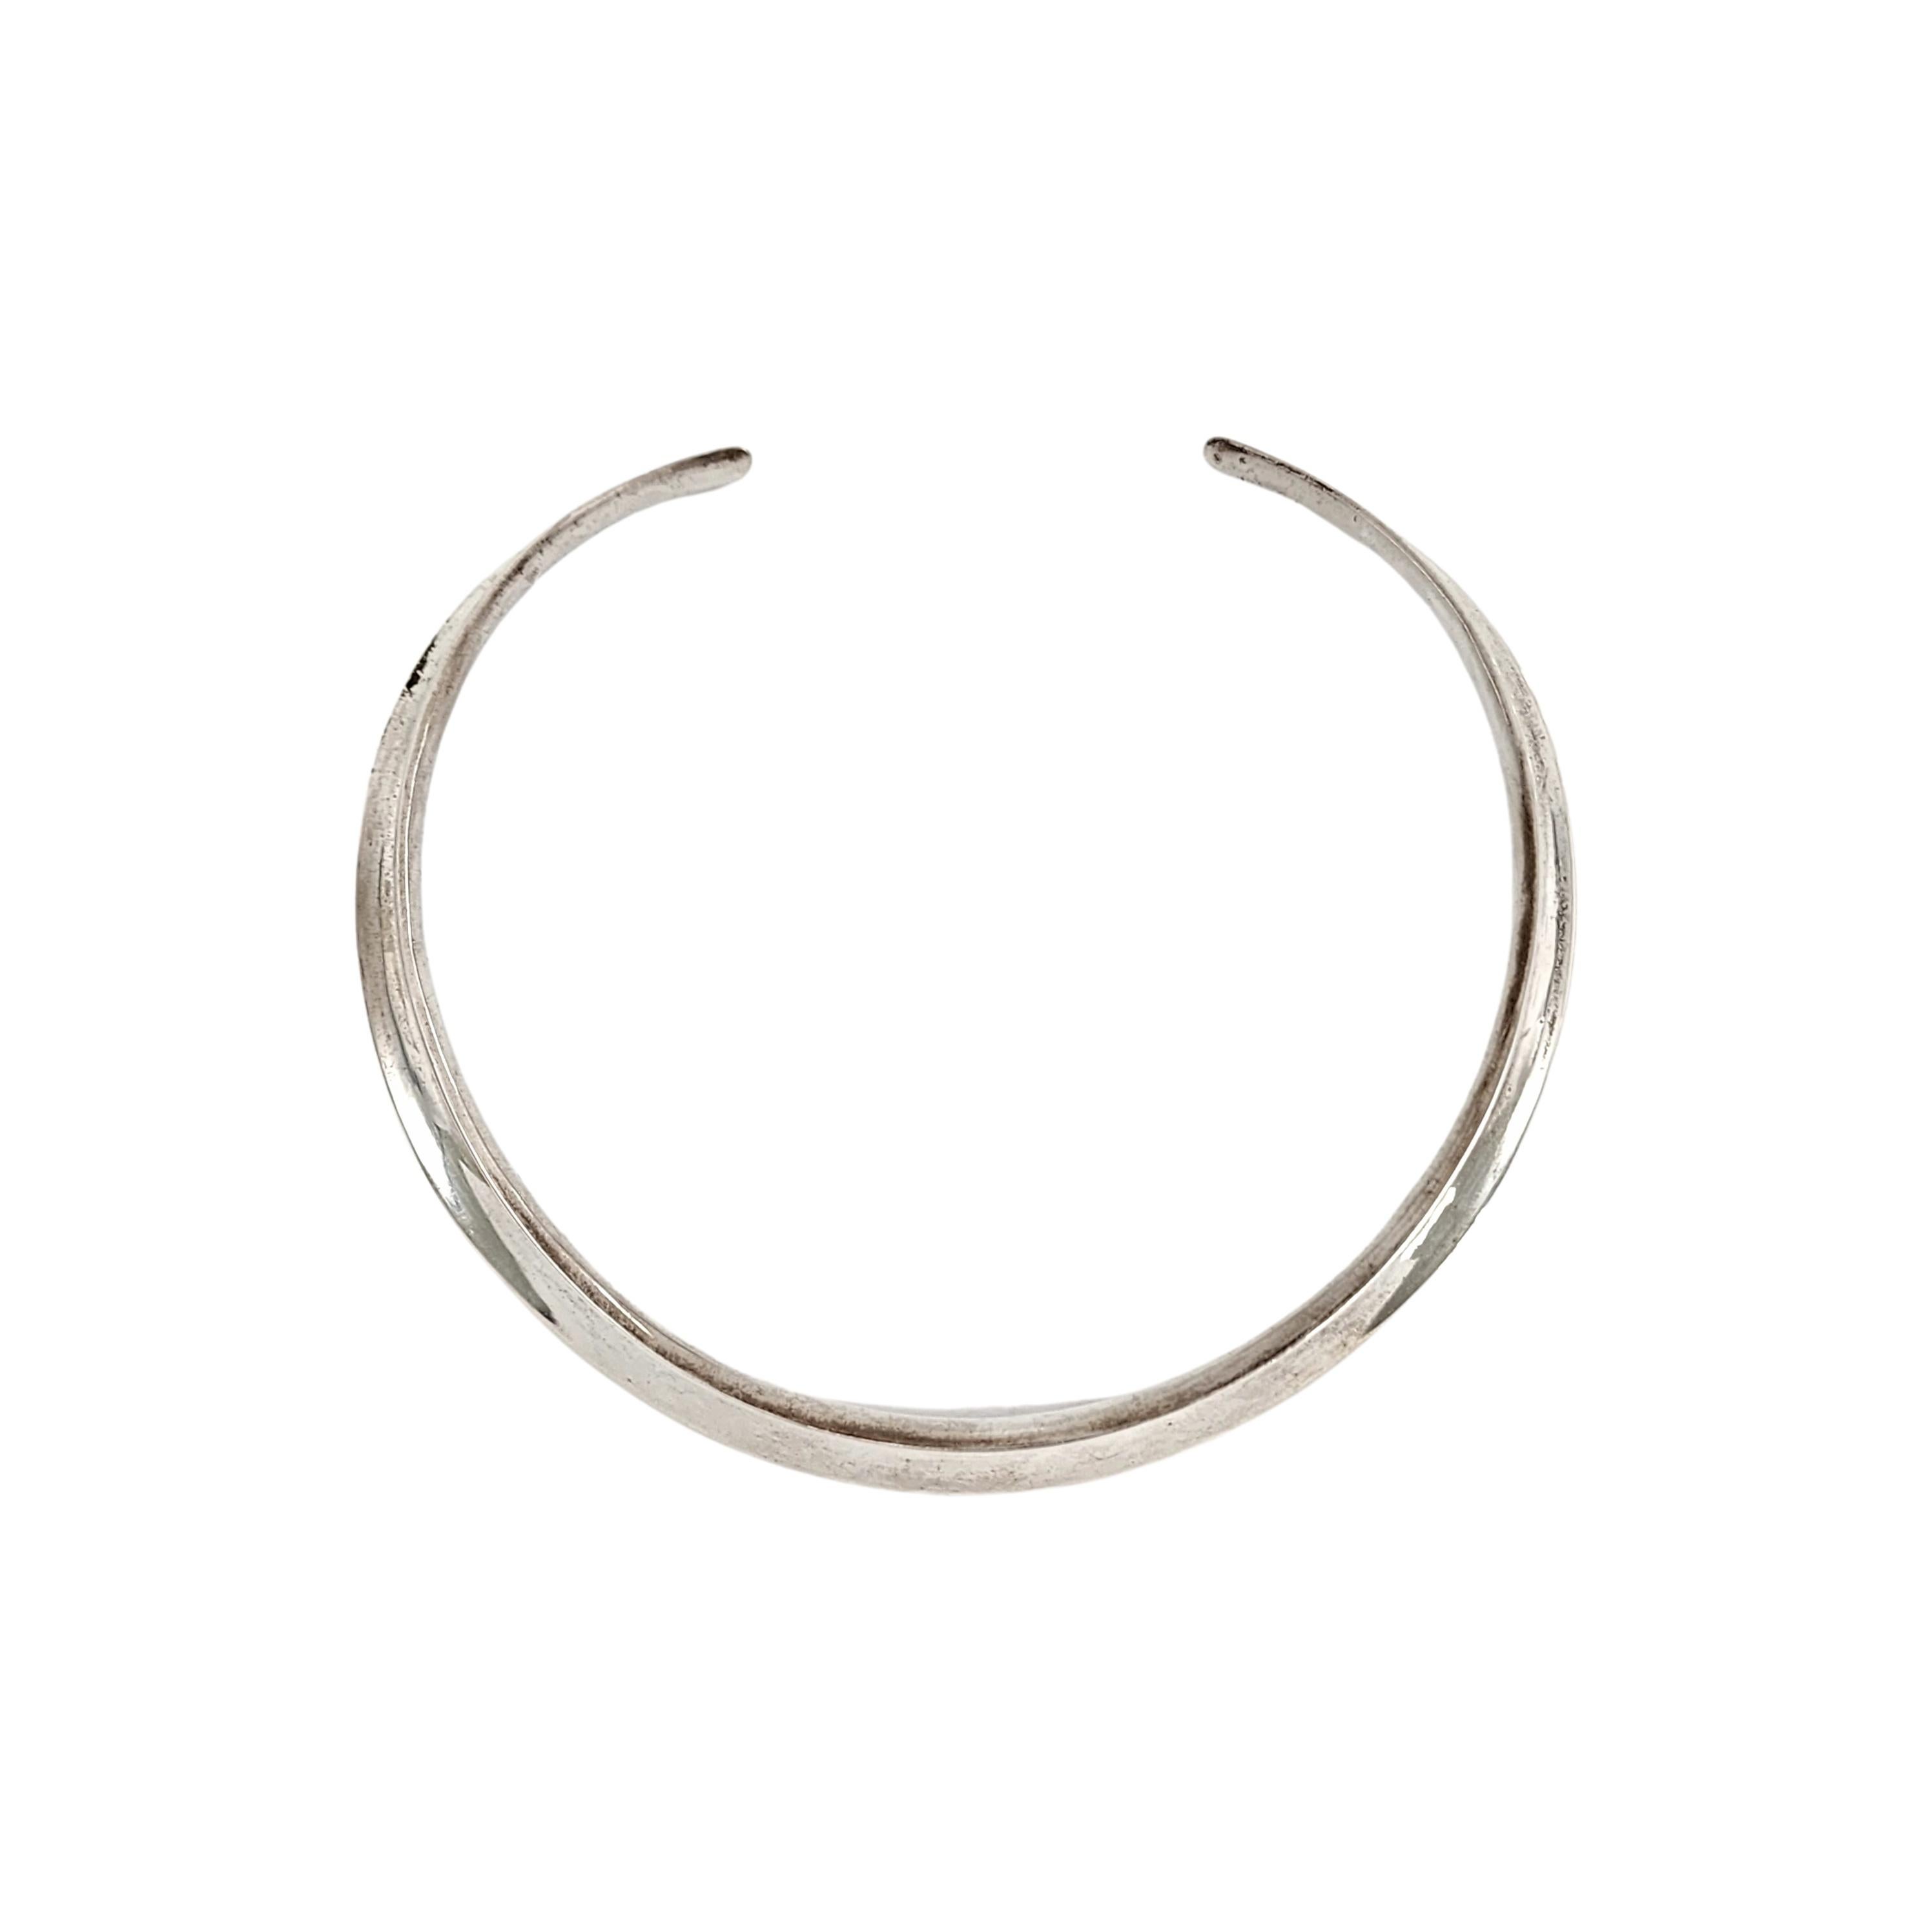 Collier vintage en argent sterling de Palle Bisgaard du Danemark.

Modèle n° 2, un anneau de cou simple et moderne de forme concave.

Mesure environ 13